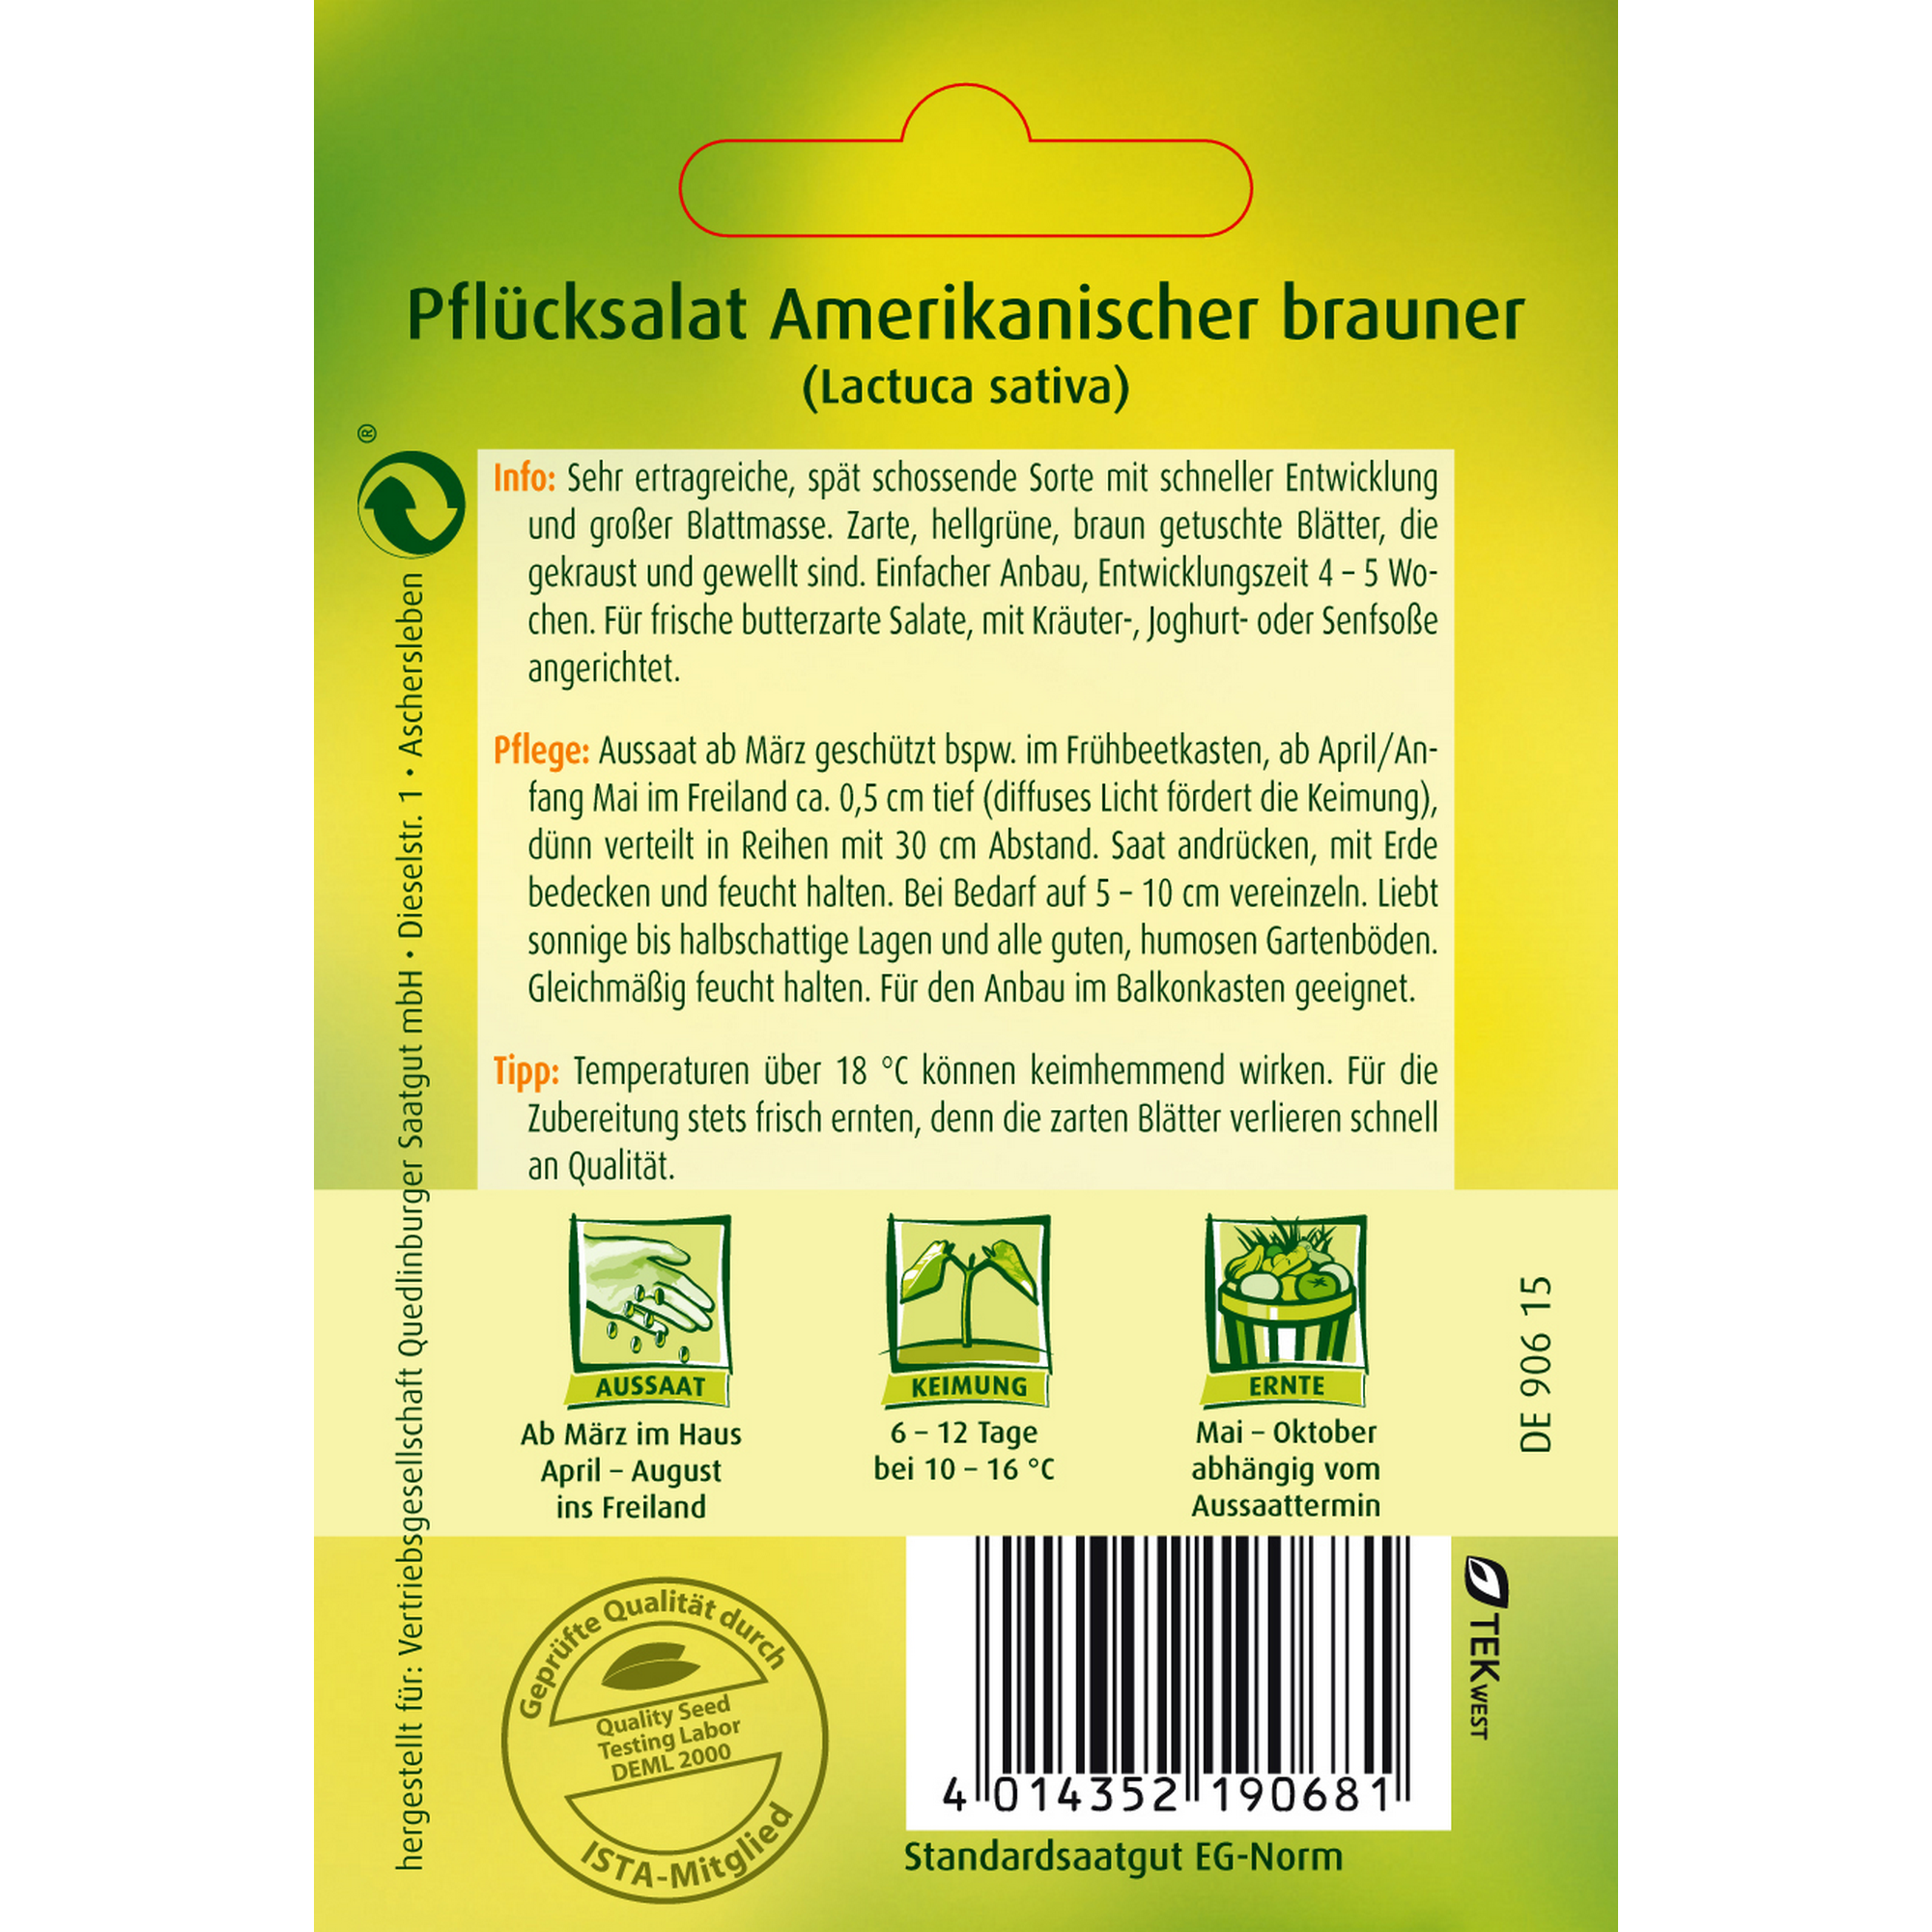 Pfluecksalat 'Amerikanischer brauner' + product picture